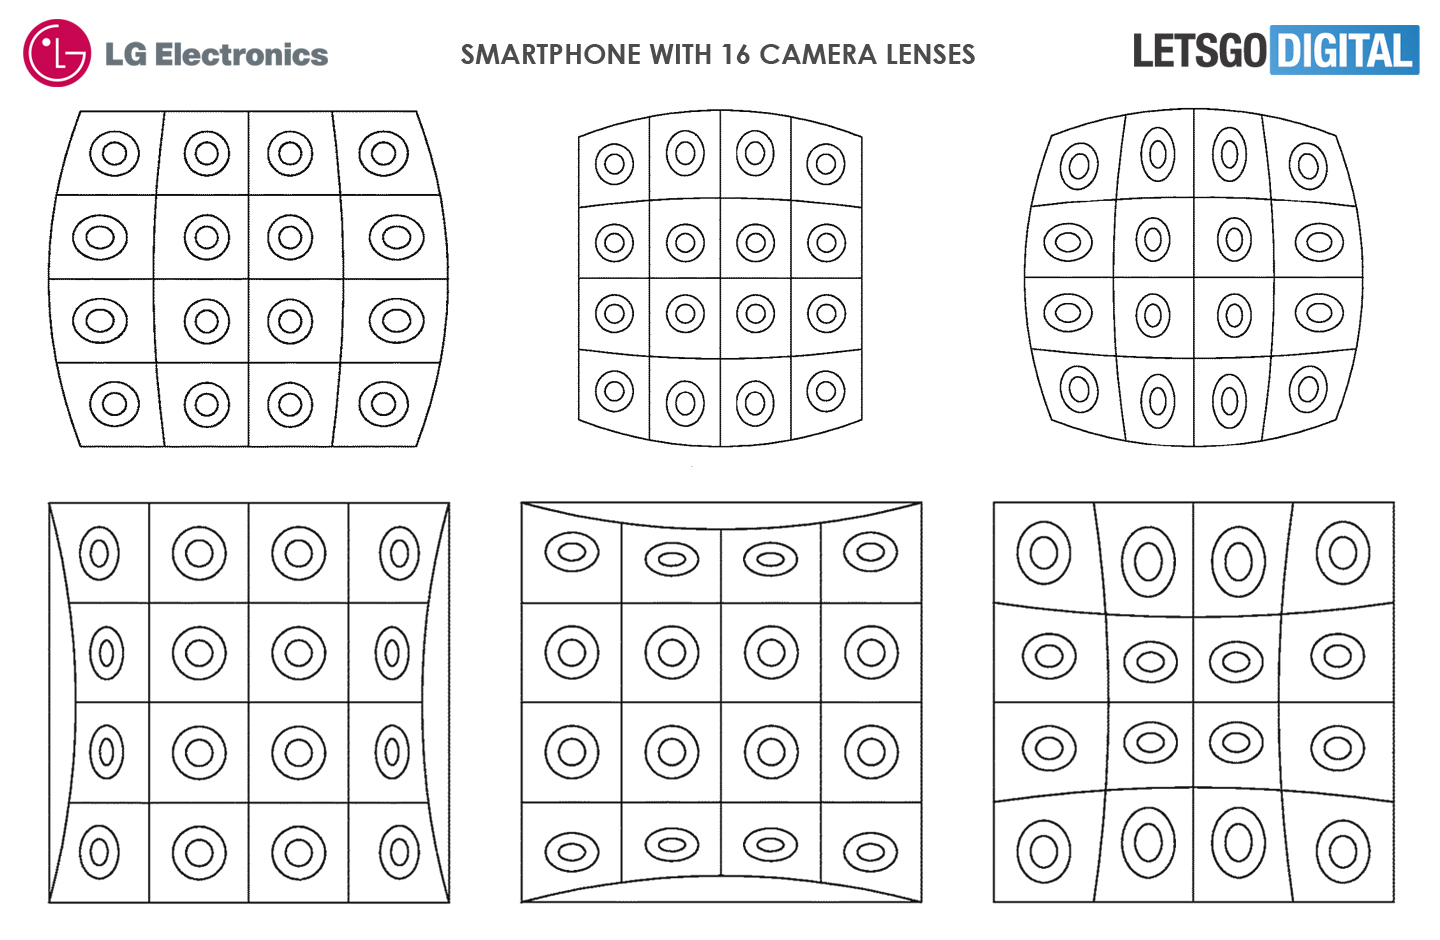 Smartphone cameras